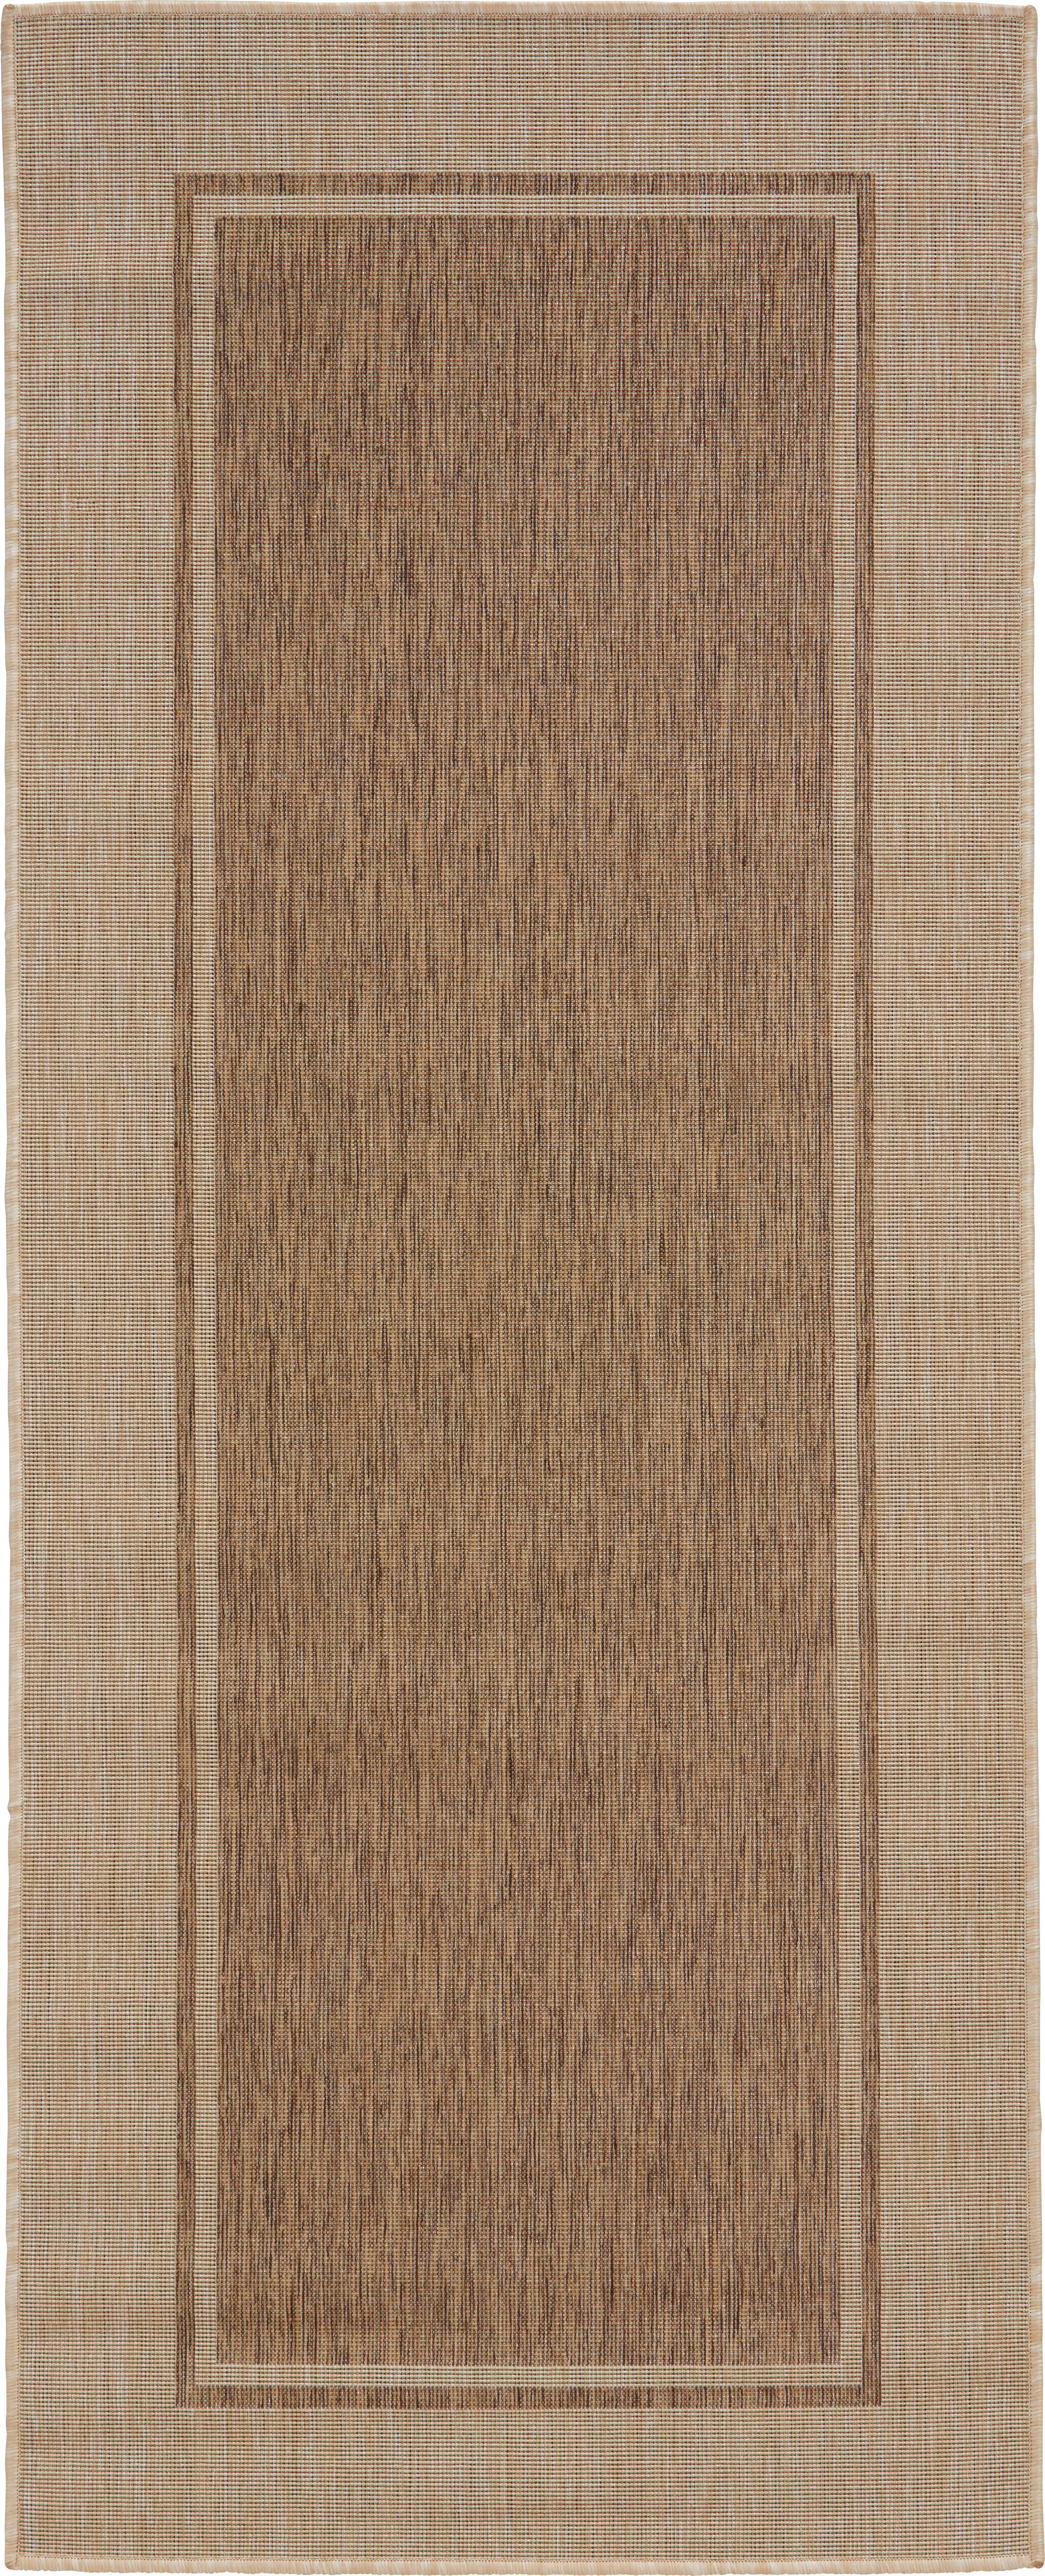 Teppich Läufer Braun Justin 80x200 cm - Braun, KONVENTIONELL, Textil (80/200cm) - James Wood